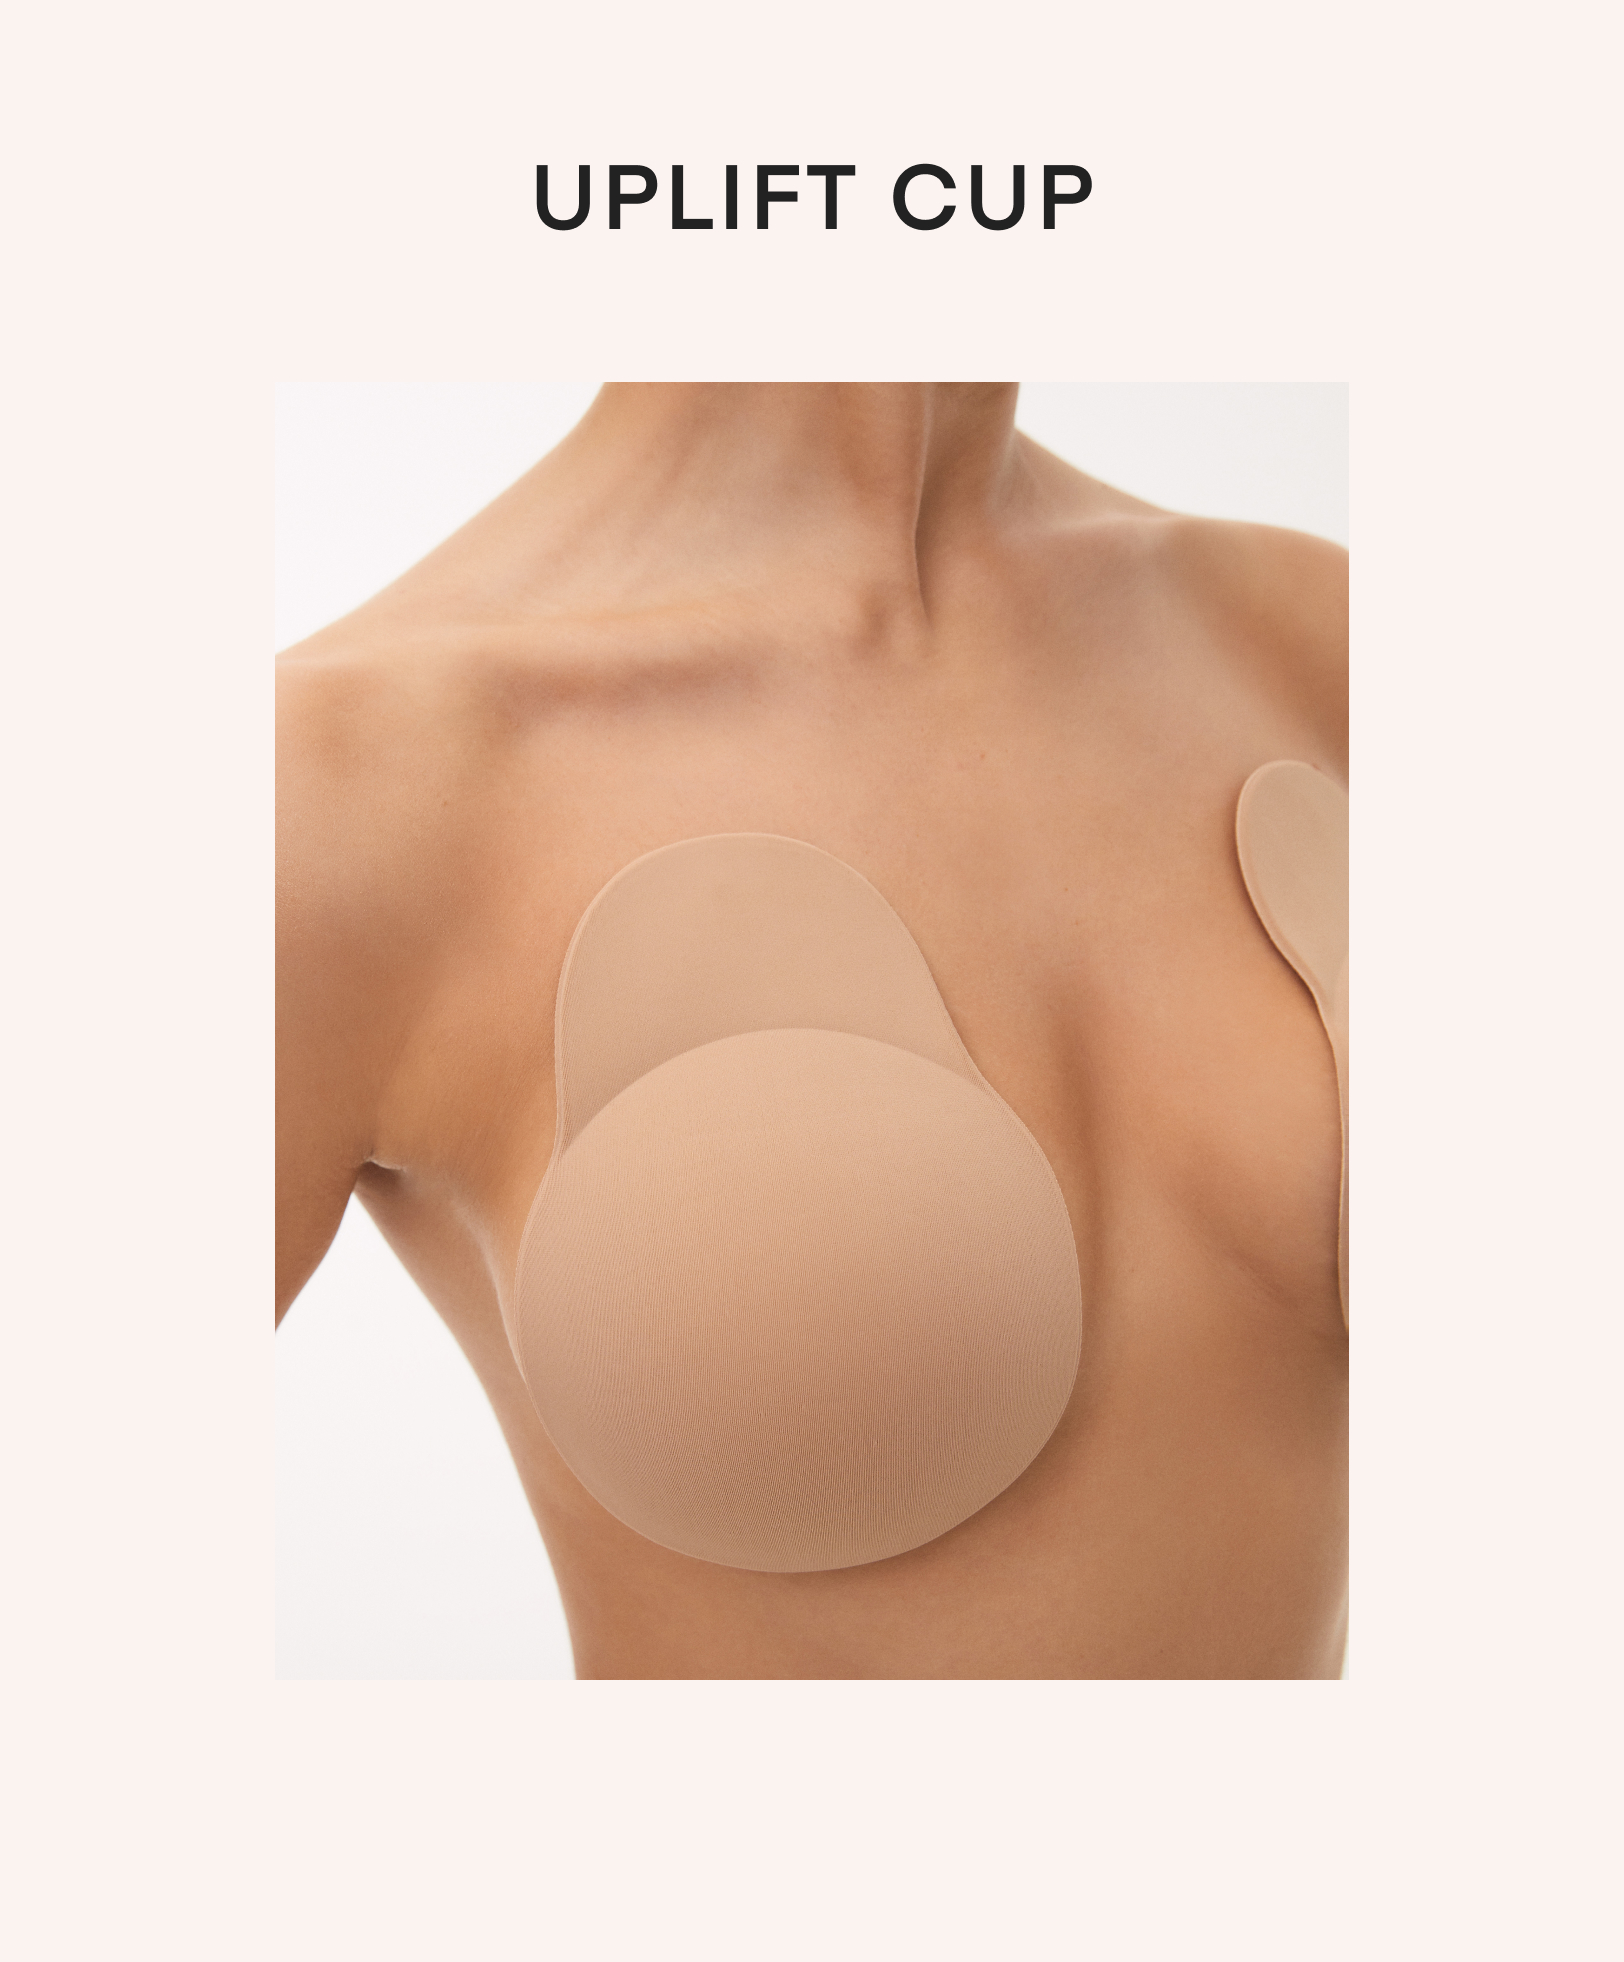 Selbstklebende Cups aus Stoff zur Betonung der Brust